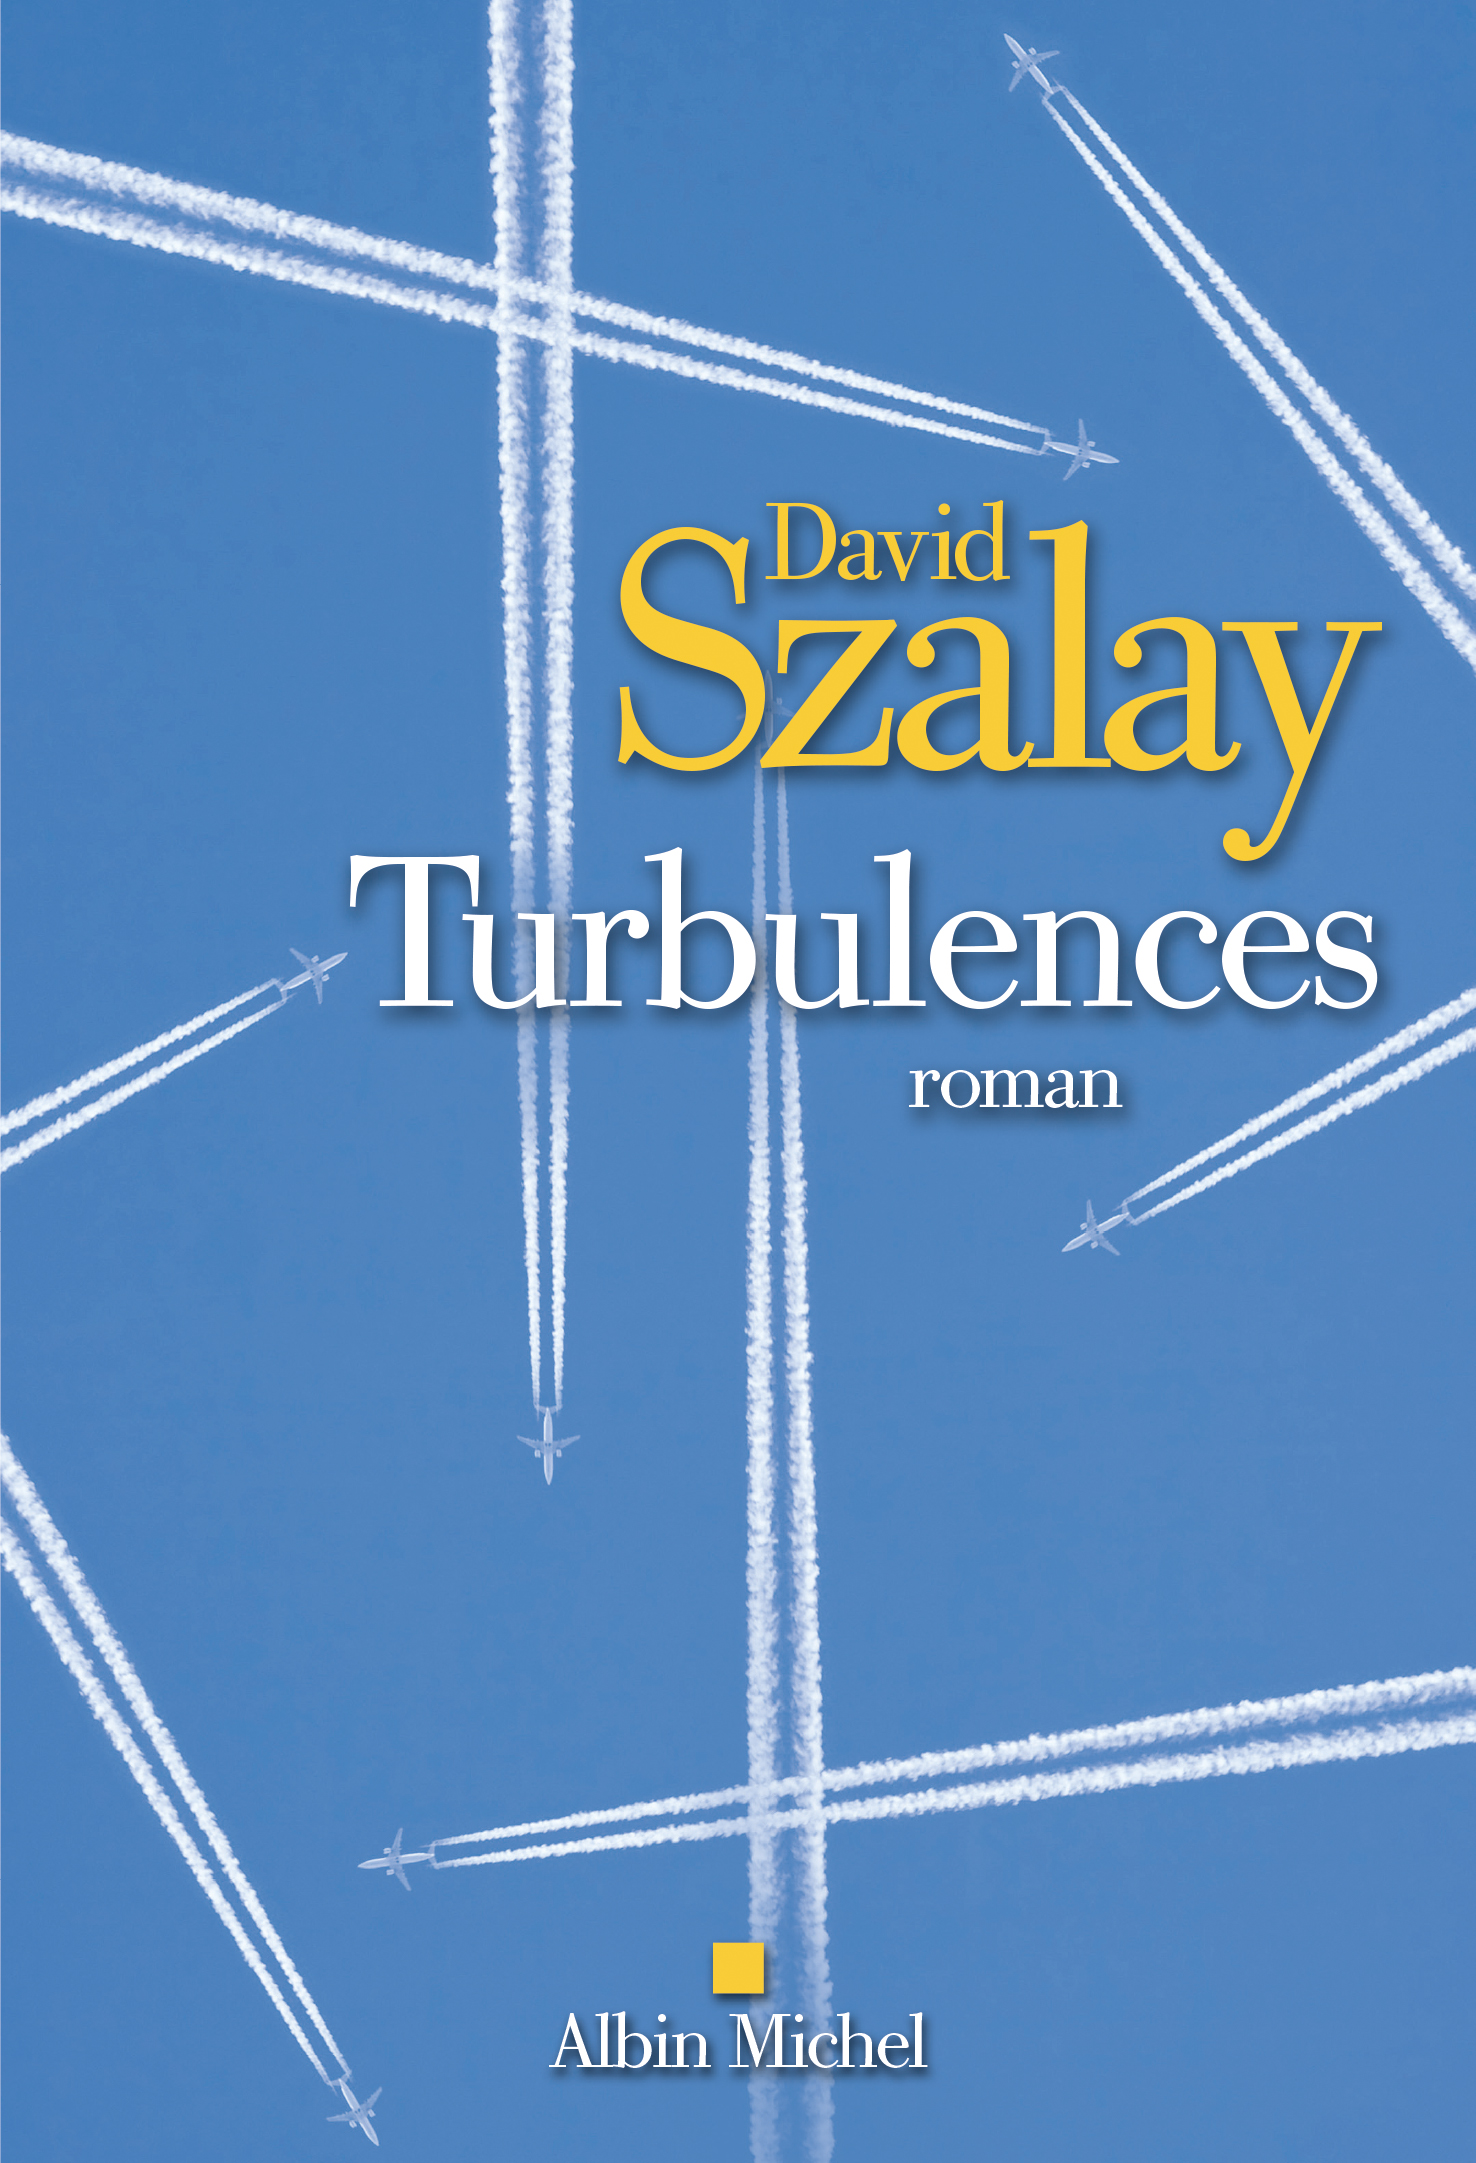 Couverture du livre Turbulences